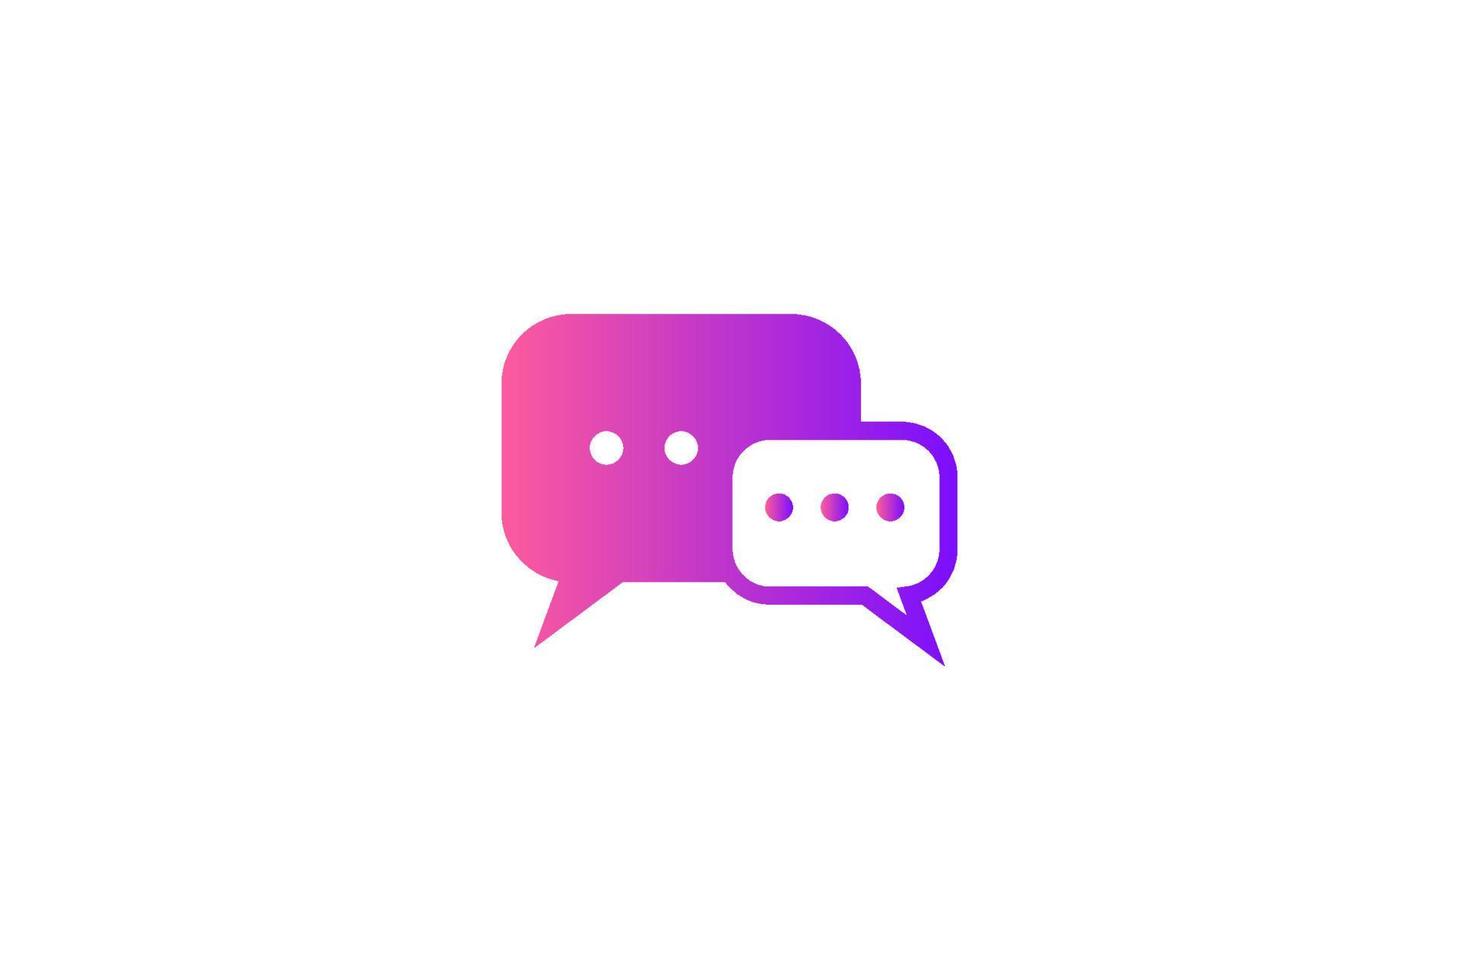 símbolo de signo de conversación de chat moderno minimalista simple para vector de diseño de logotipo de comunicación